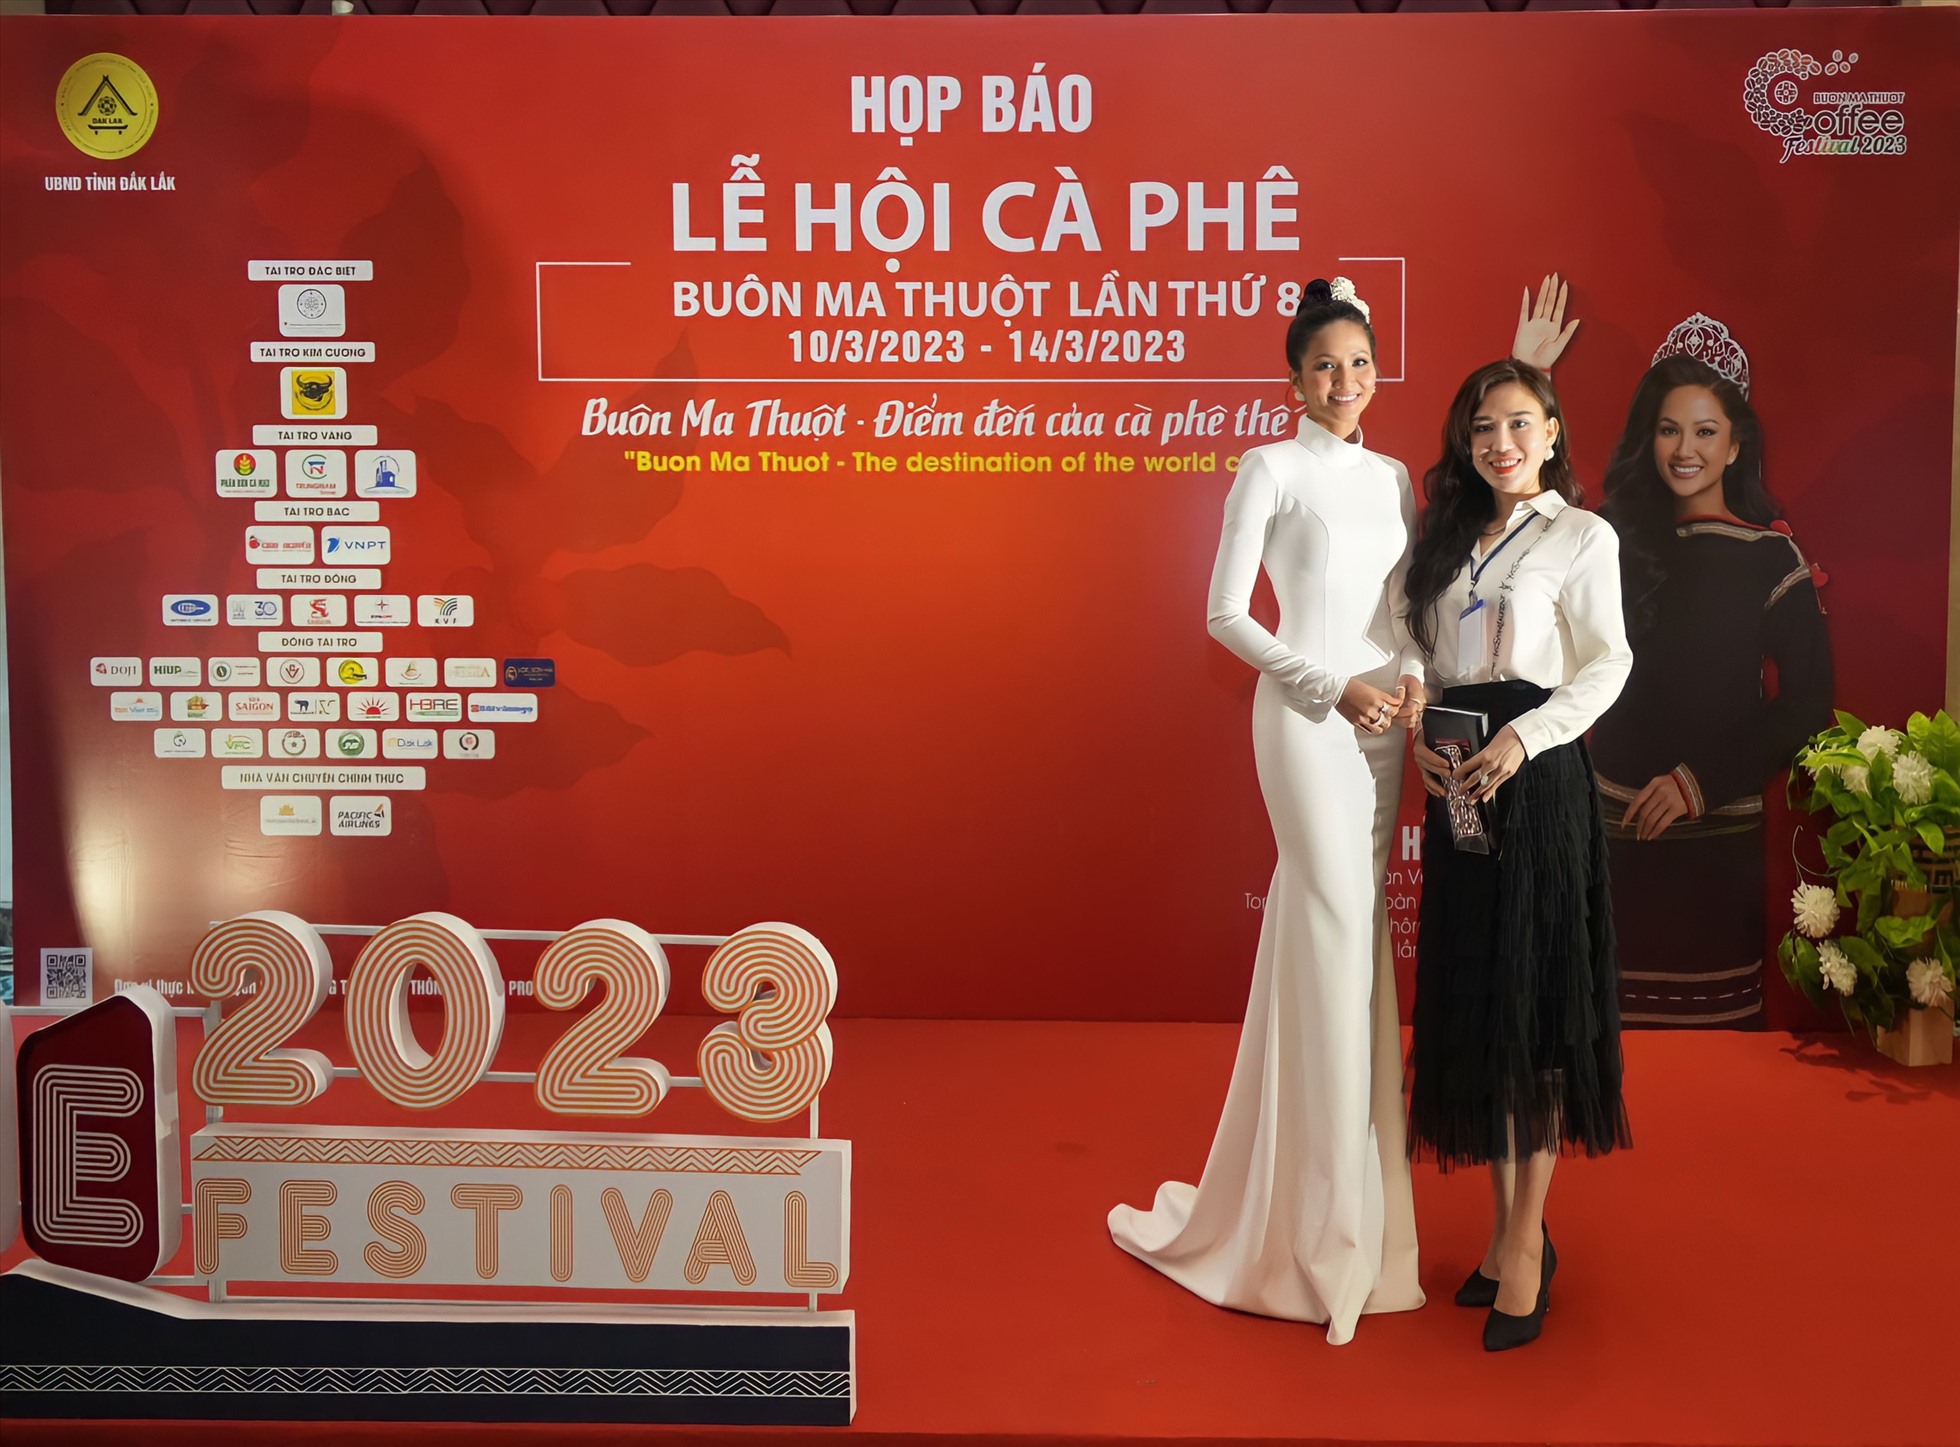 Hoa hậu H’Hen Niê làm đại sứ truyền thông của Lễ hội cà phê Buôn Ma Thuột lần thứ 8. Ảnh: Vũ Long